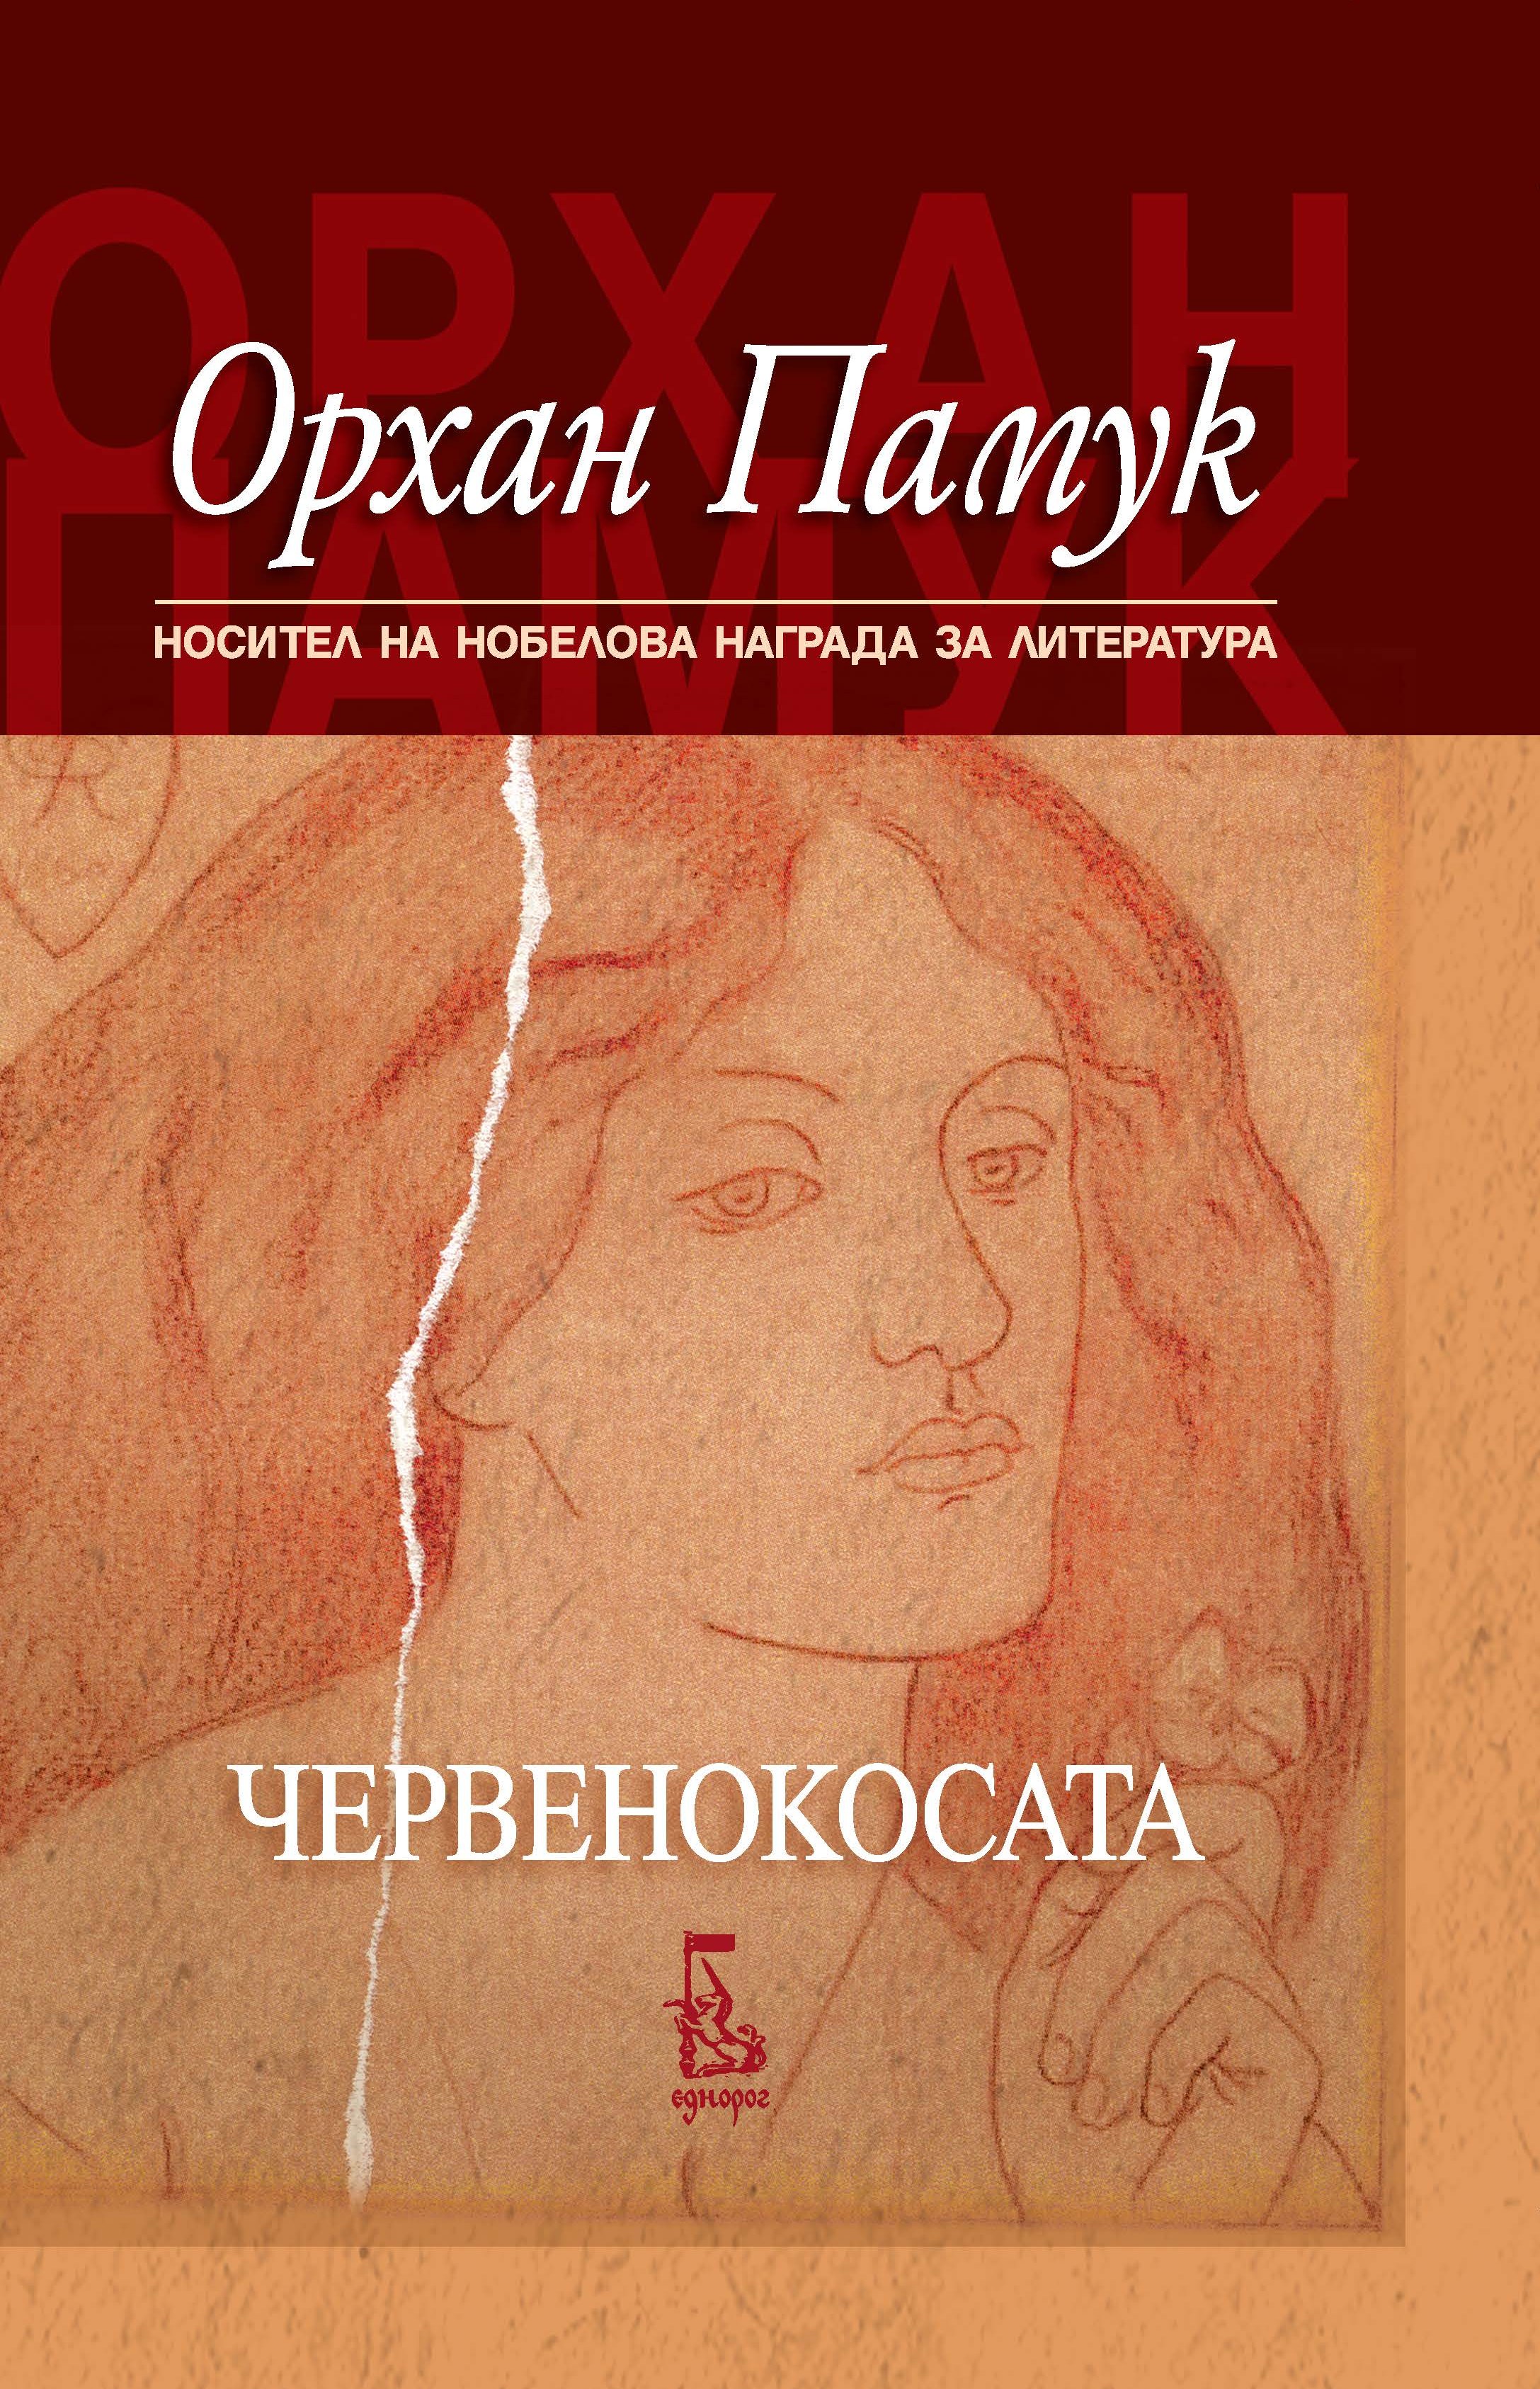 Новата книга на Орхан Памук – „Червенокосата”